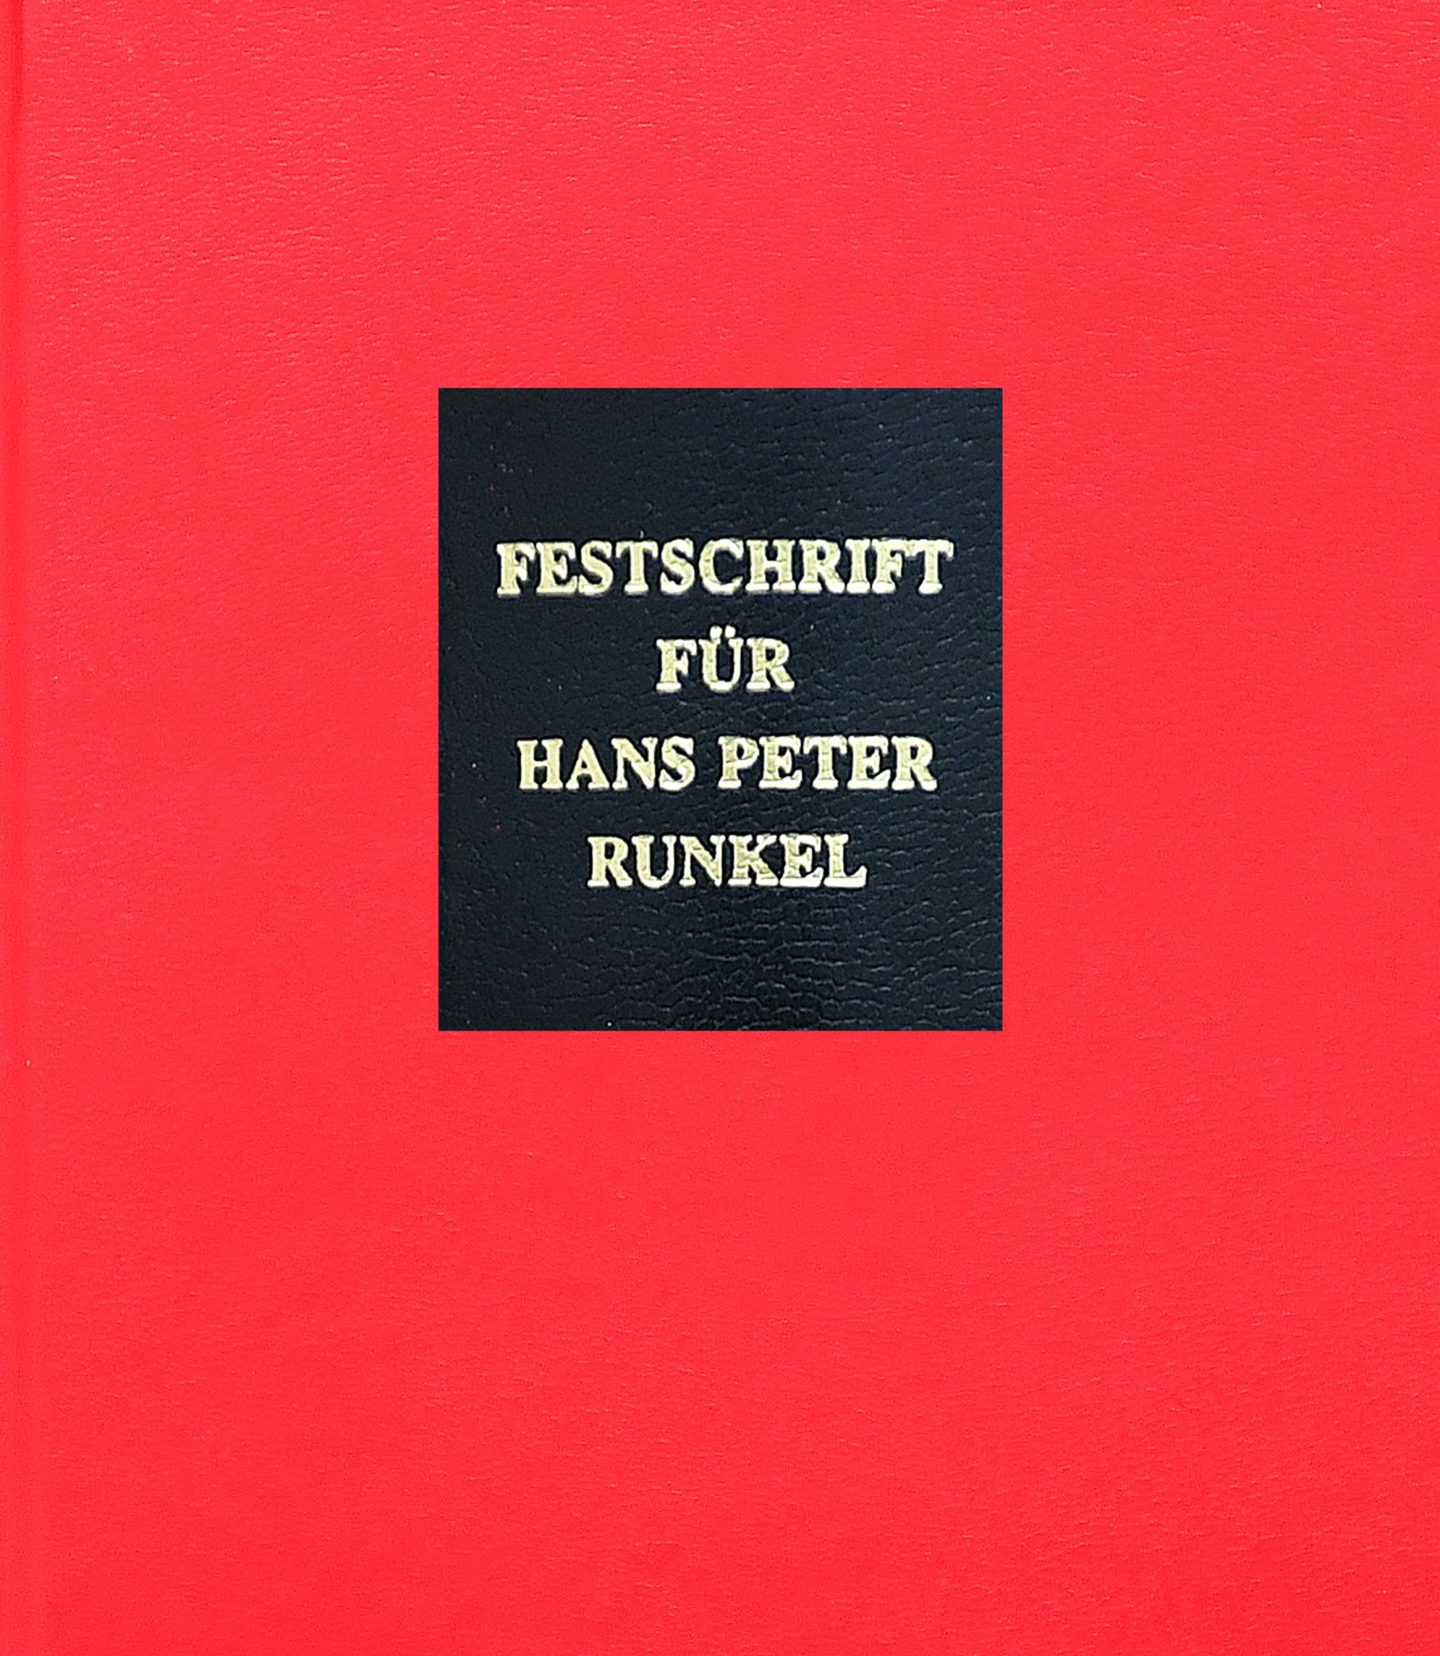 Publikation öffnen: Festschrift für Hans Peter Runkel